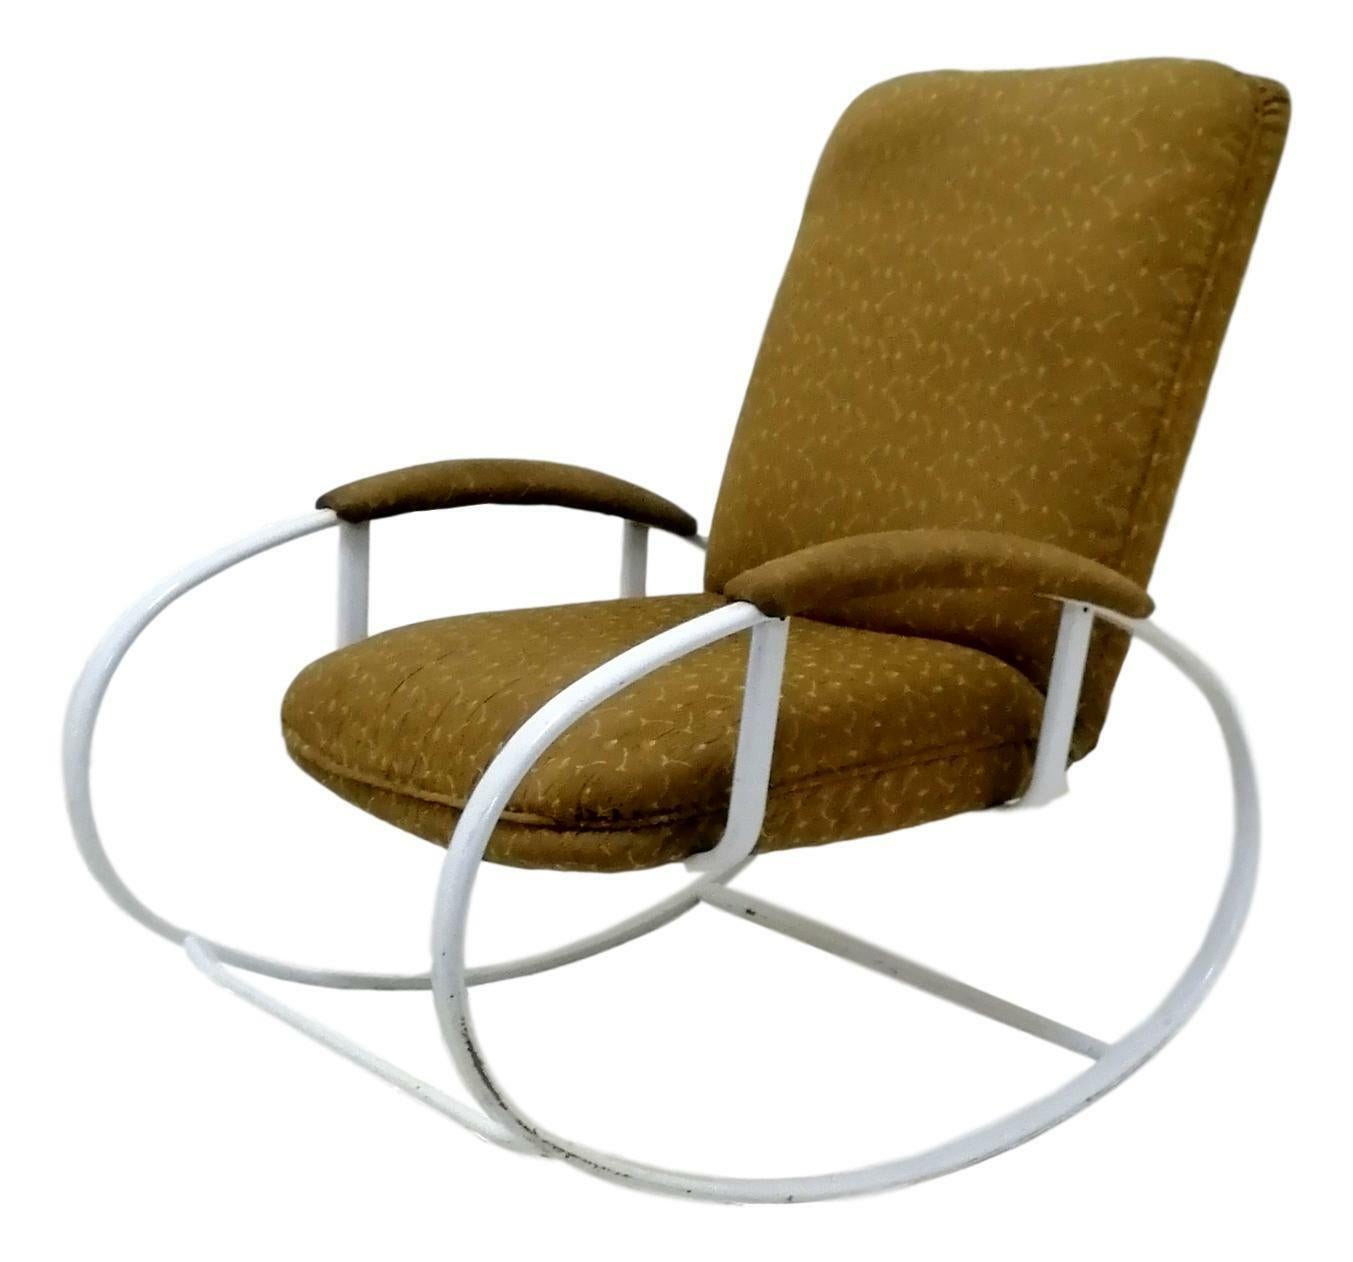 Original rocking chair des années 70, probablement attribué au design de renato zevi, sur une structure en métal laqué blanc et un revêtement en tissu.

Bon état général, comme le montrent les photos.